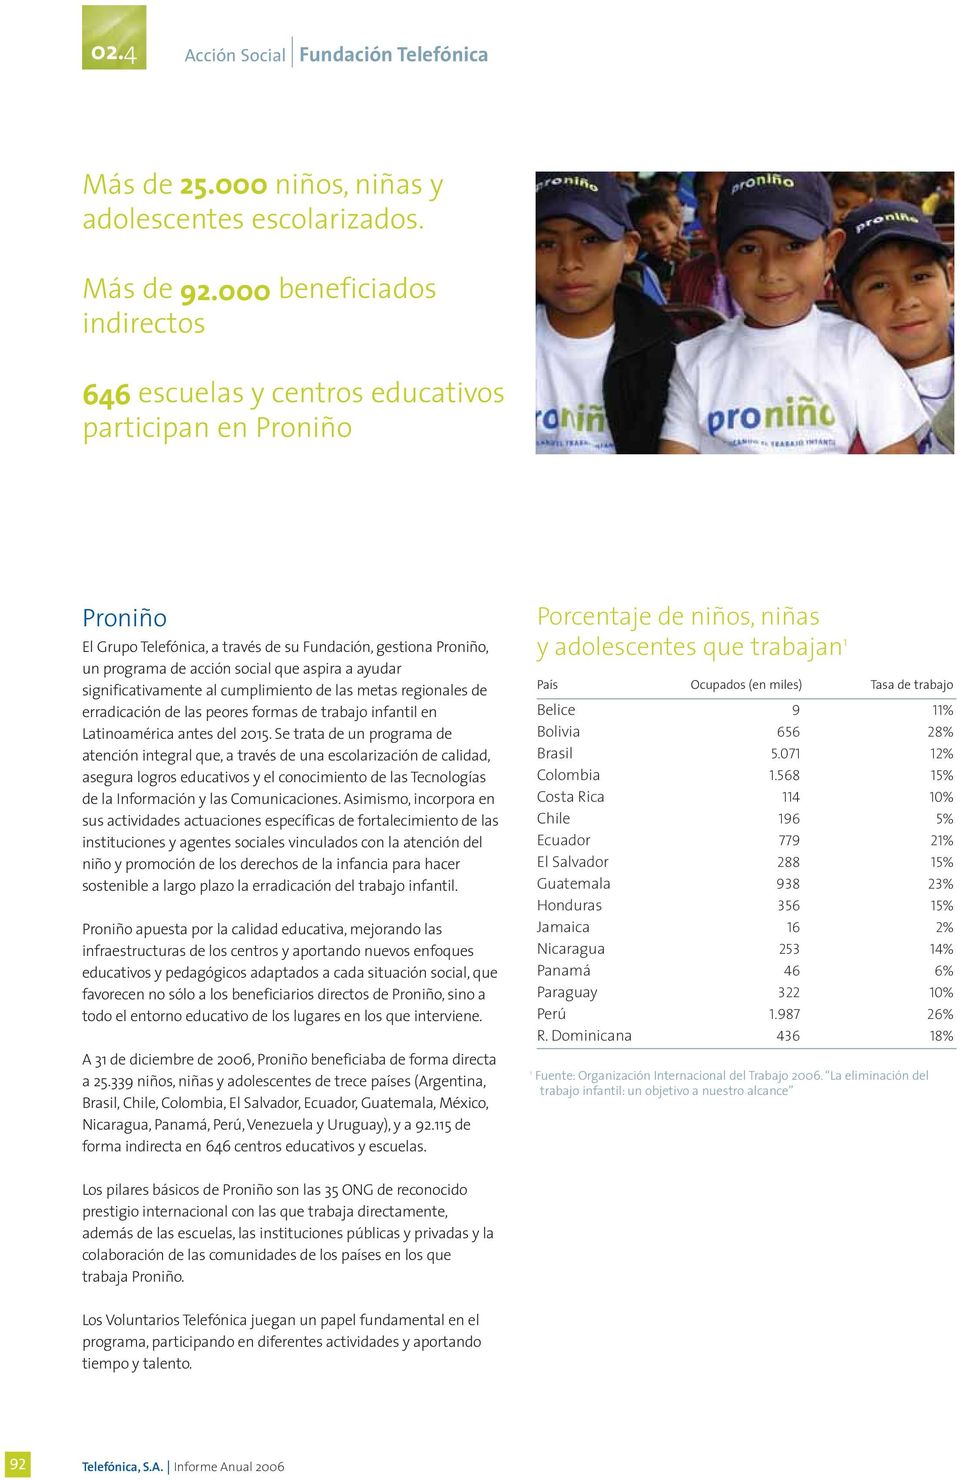 ayudar significativamente al cumplimiento de las metas regionales de erradicación de las peores formas de trabajo infantil en Latinoamérica antes del 2015.